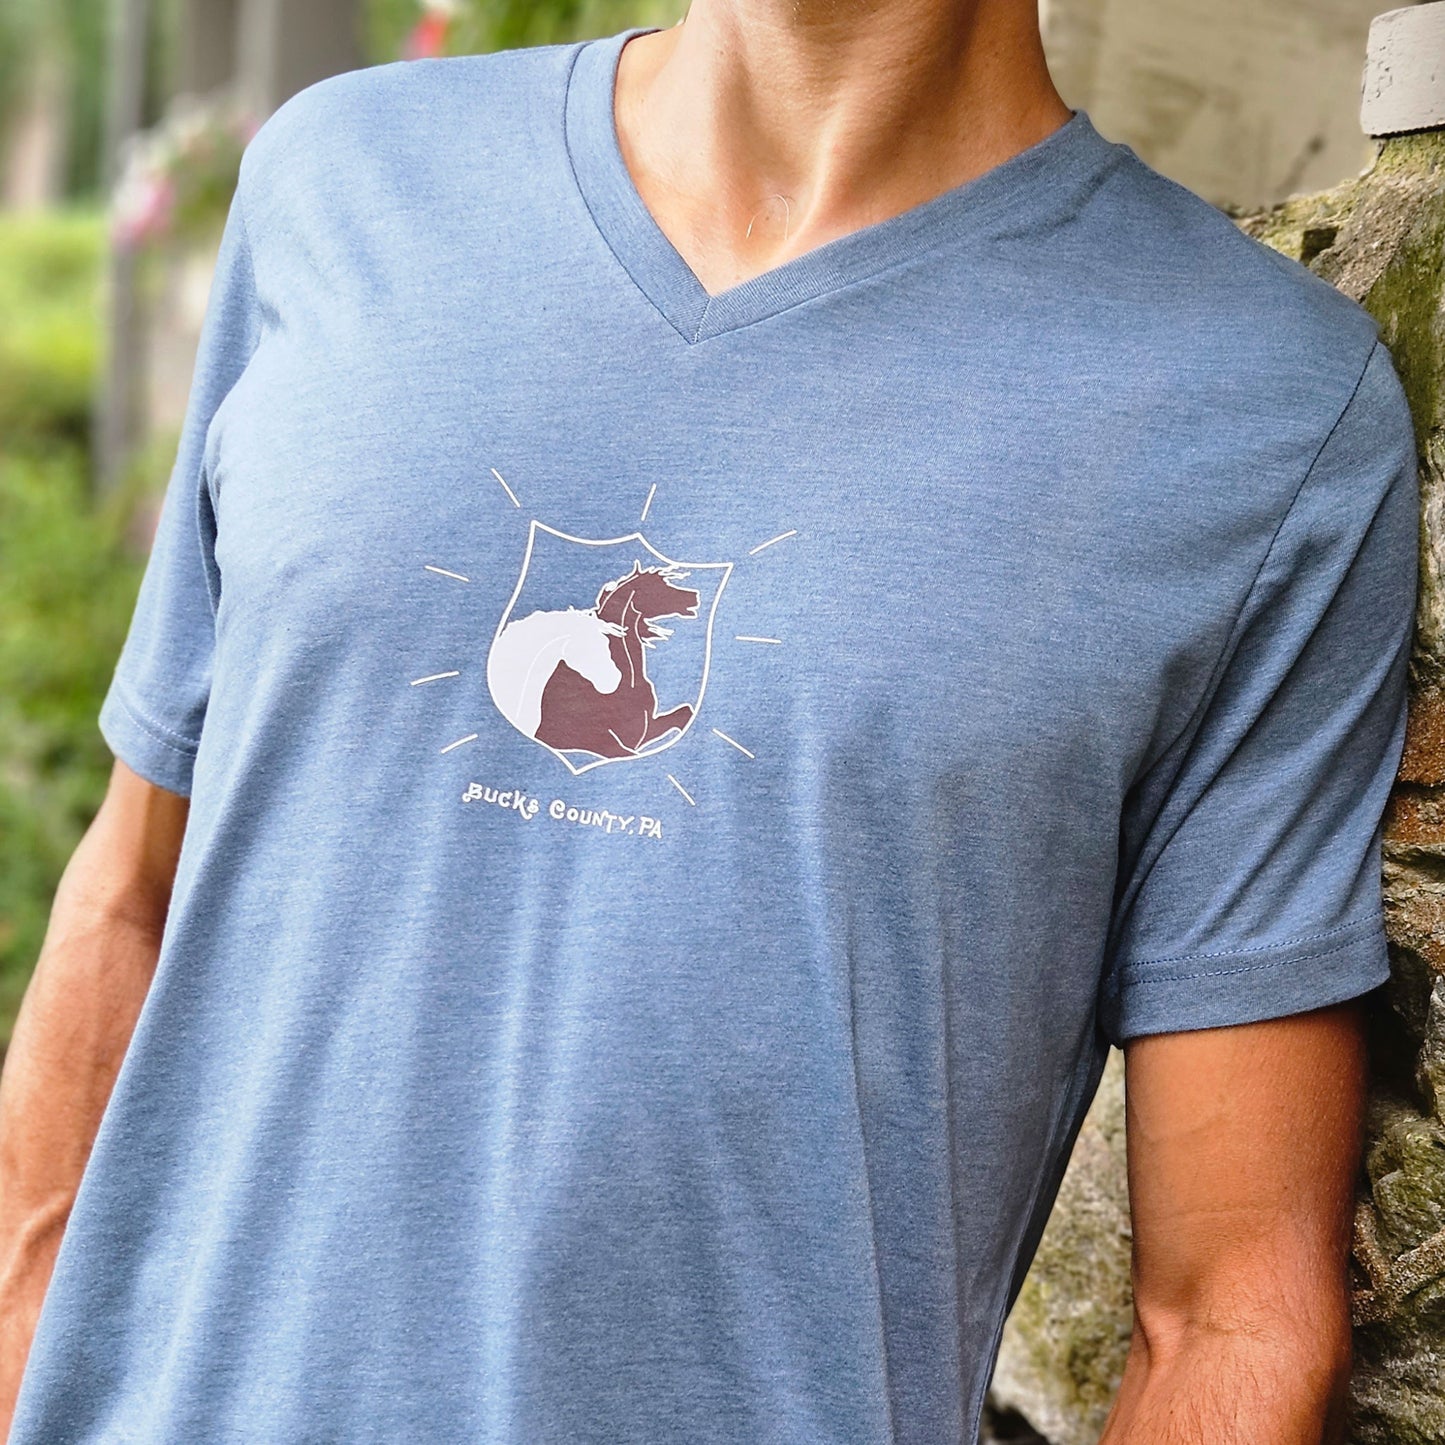 George Washington's horses / graphic V-neck T-shirt - heather slate